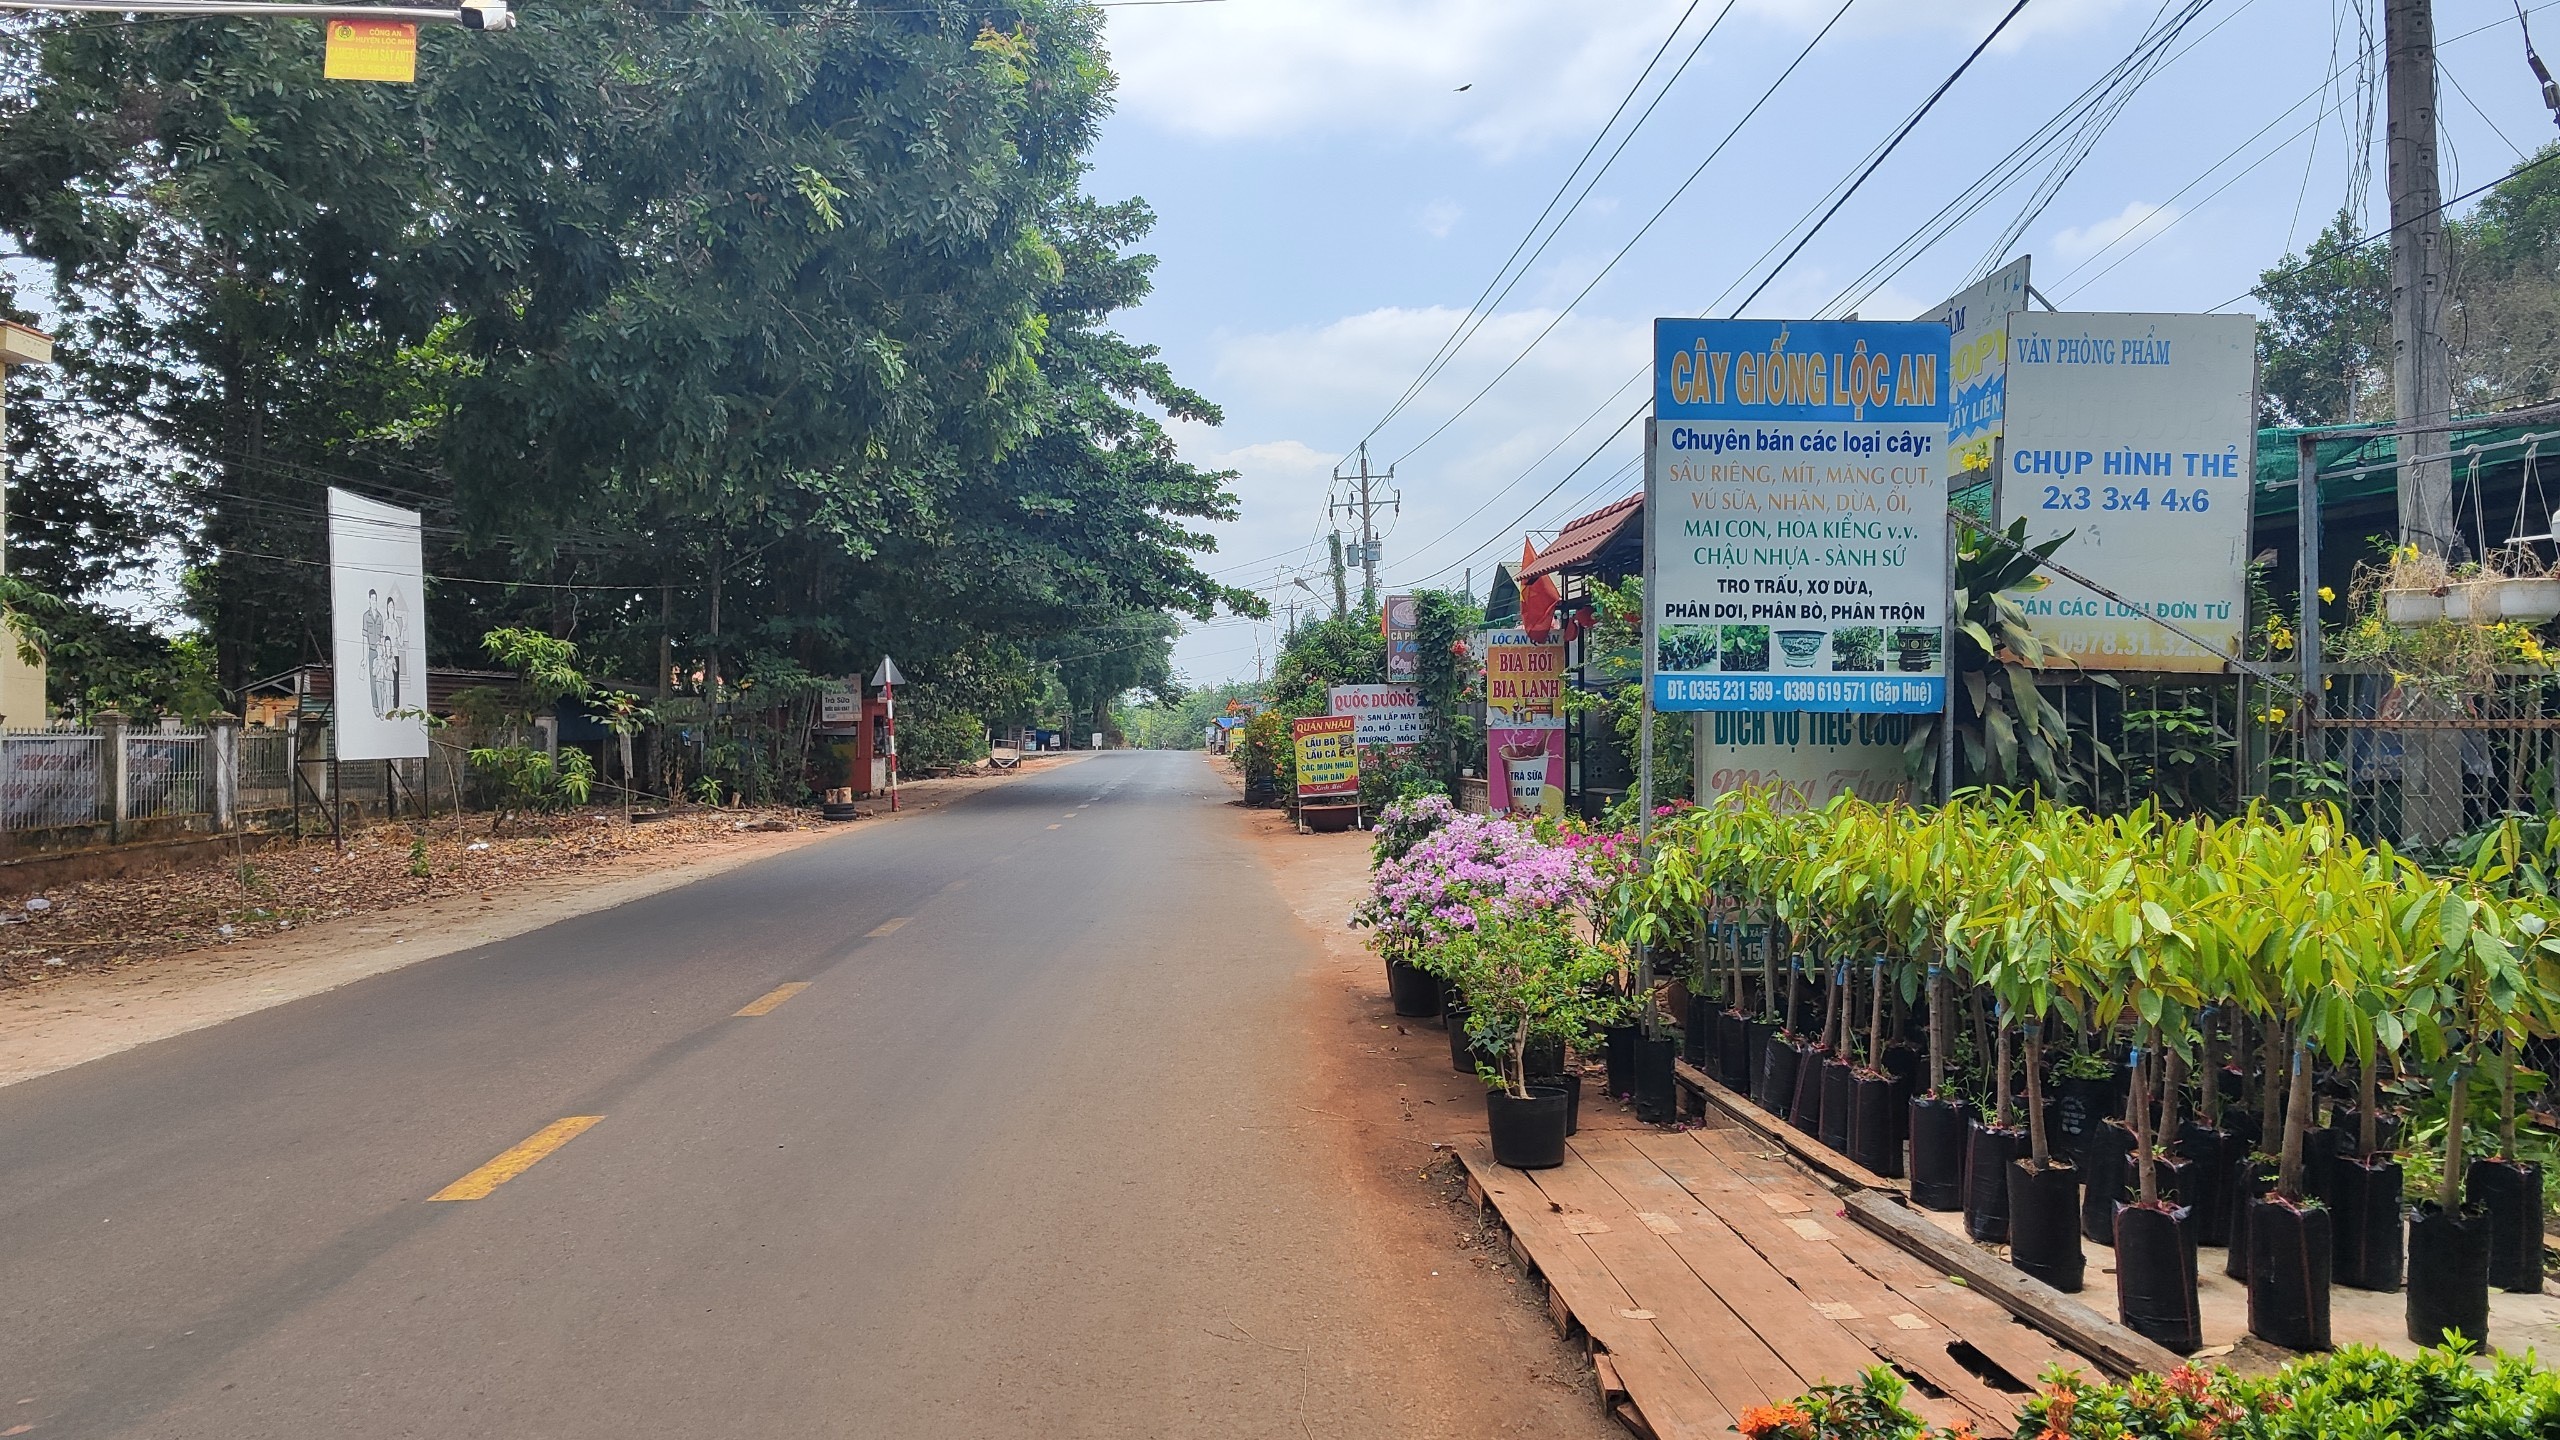 Bán gấp lô đất ngay trung tâm thị trấn Lộc Ninh, đường nhựa 18m, 300m2 thổ cư 100m2 giá chỉ 320tr